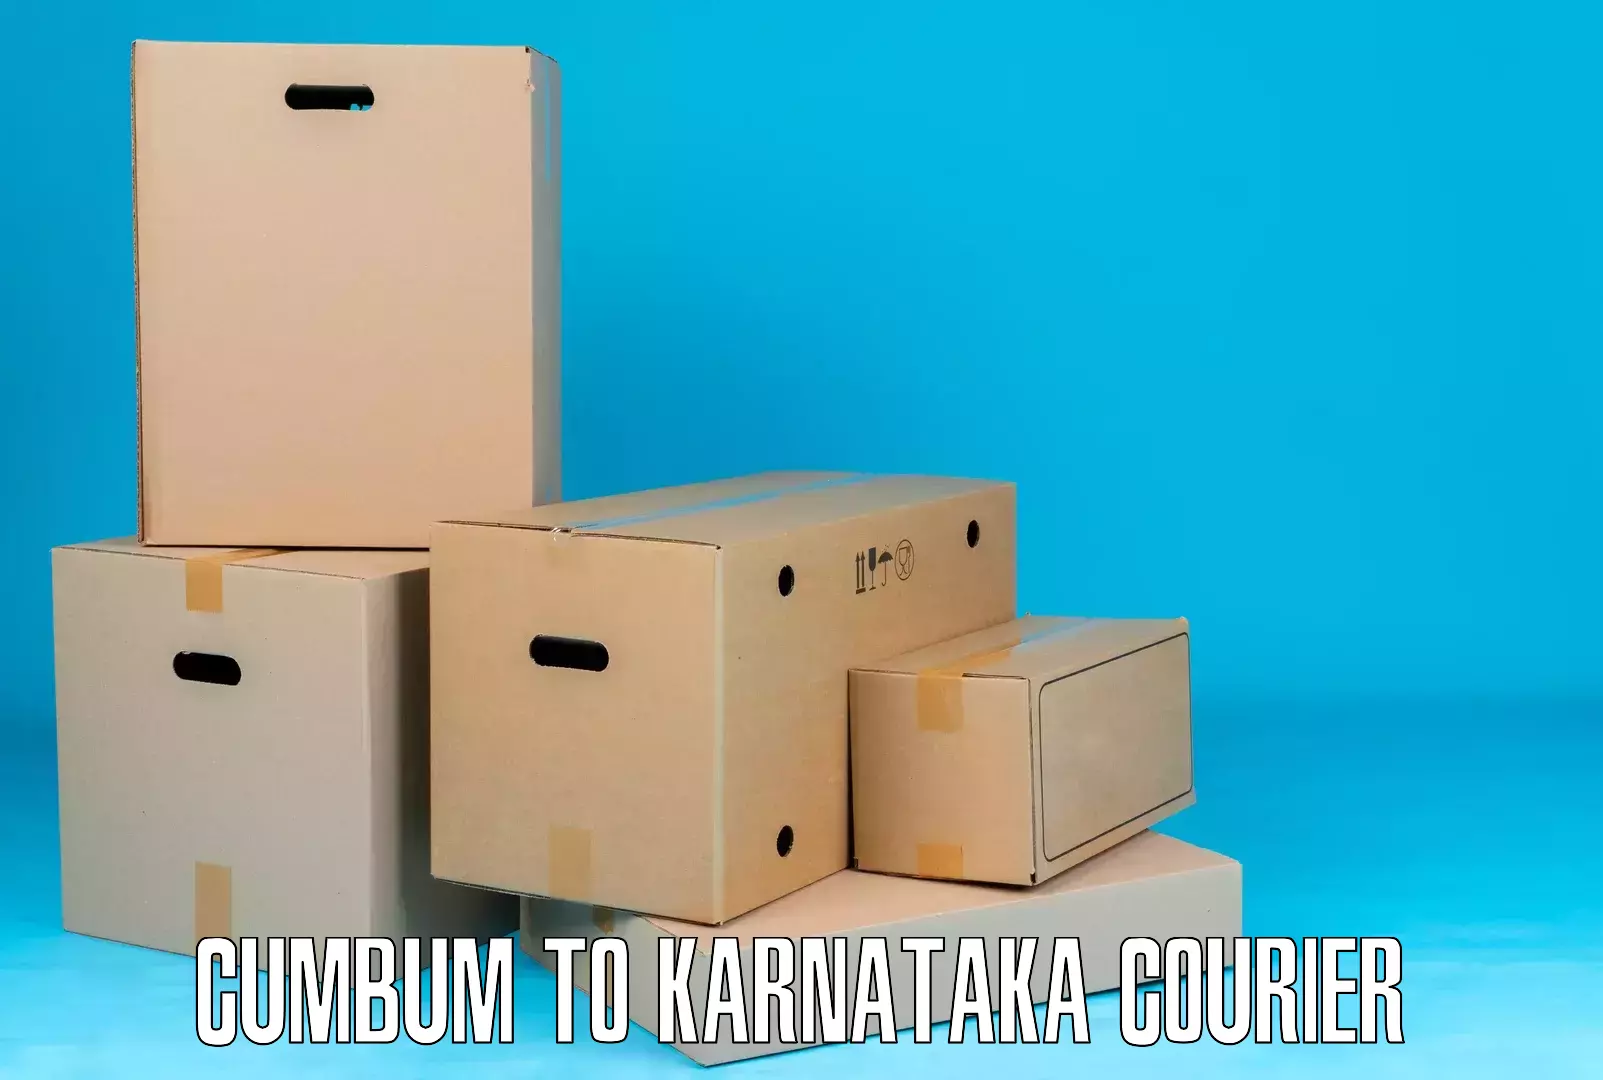 Premium courier solutions Cumbum to Honnavar